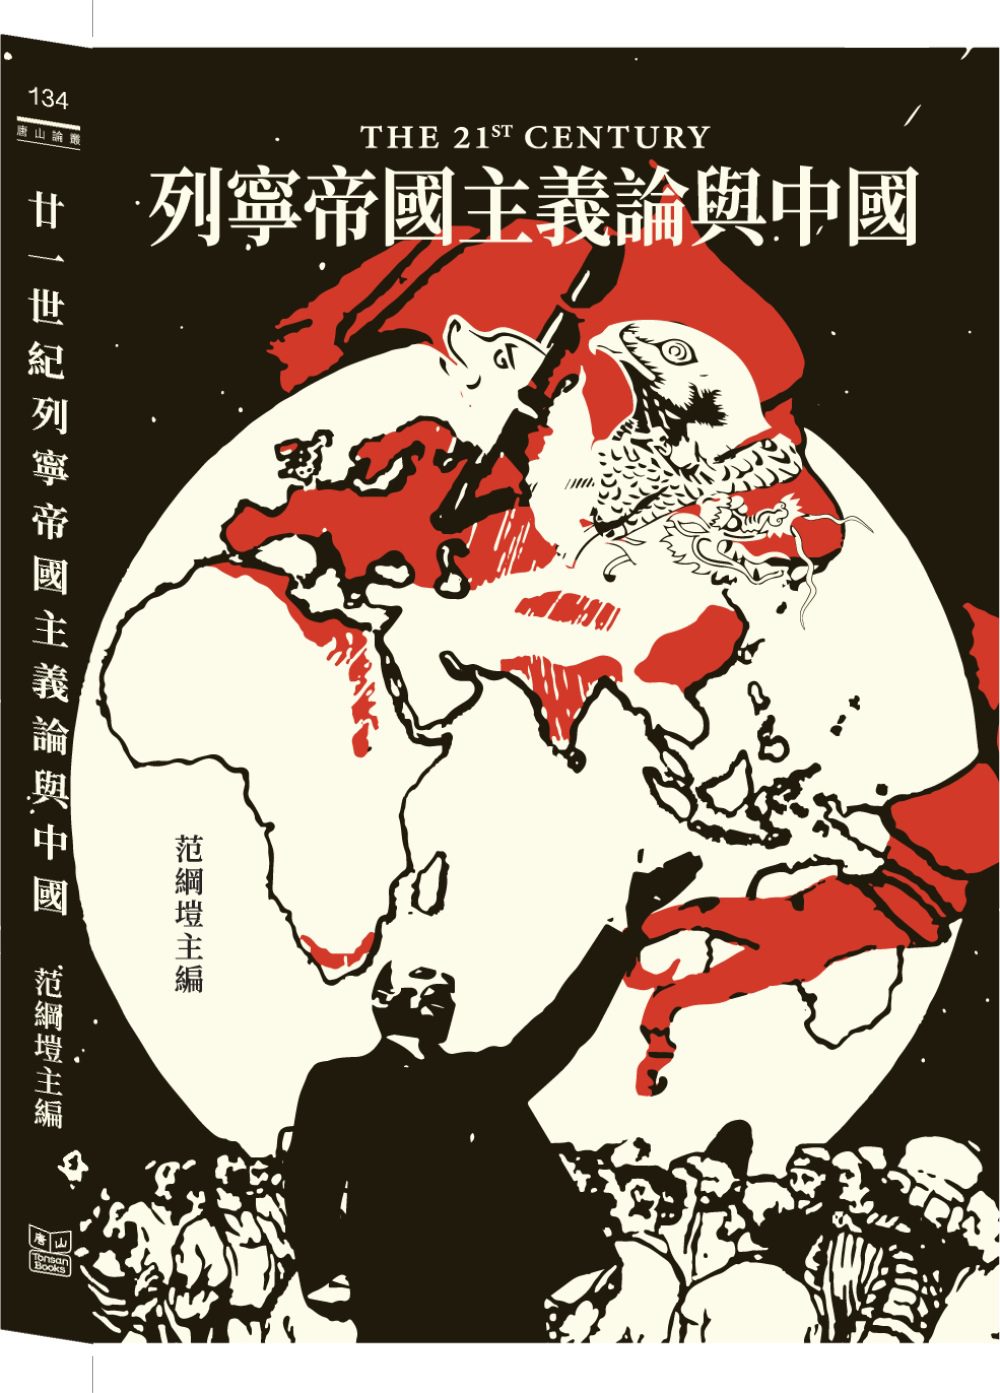 廿一世紀列寧帝國主義論與中國